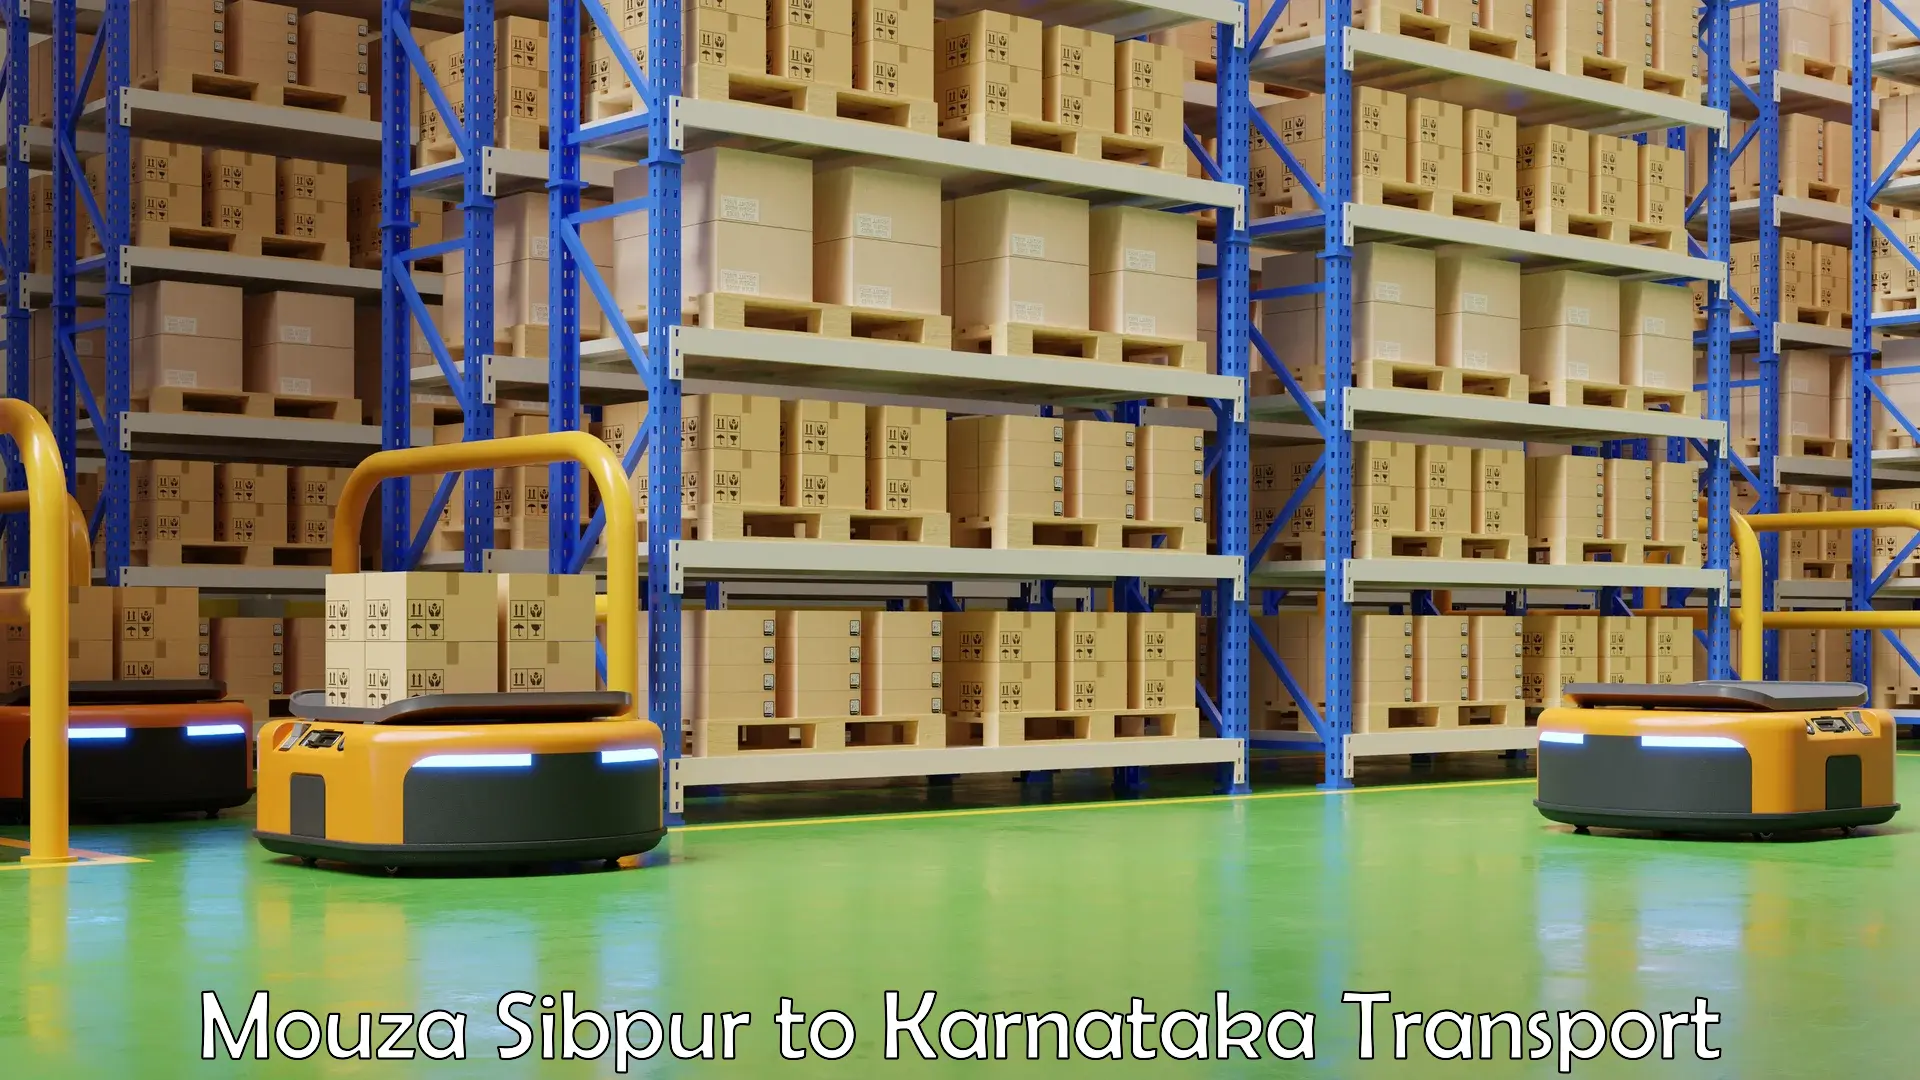 Air cargo transport services Mouza Sibpur to Khanapur Karnataka